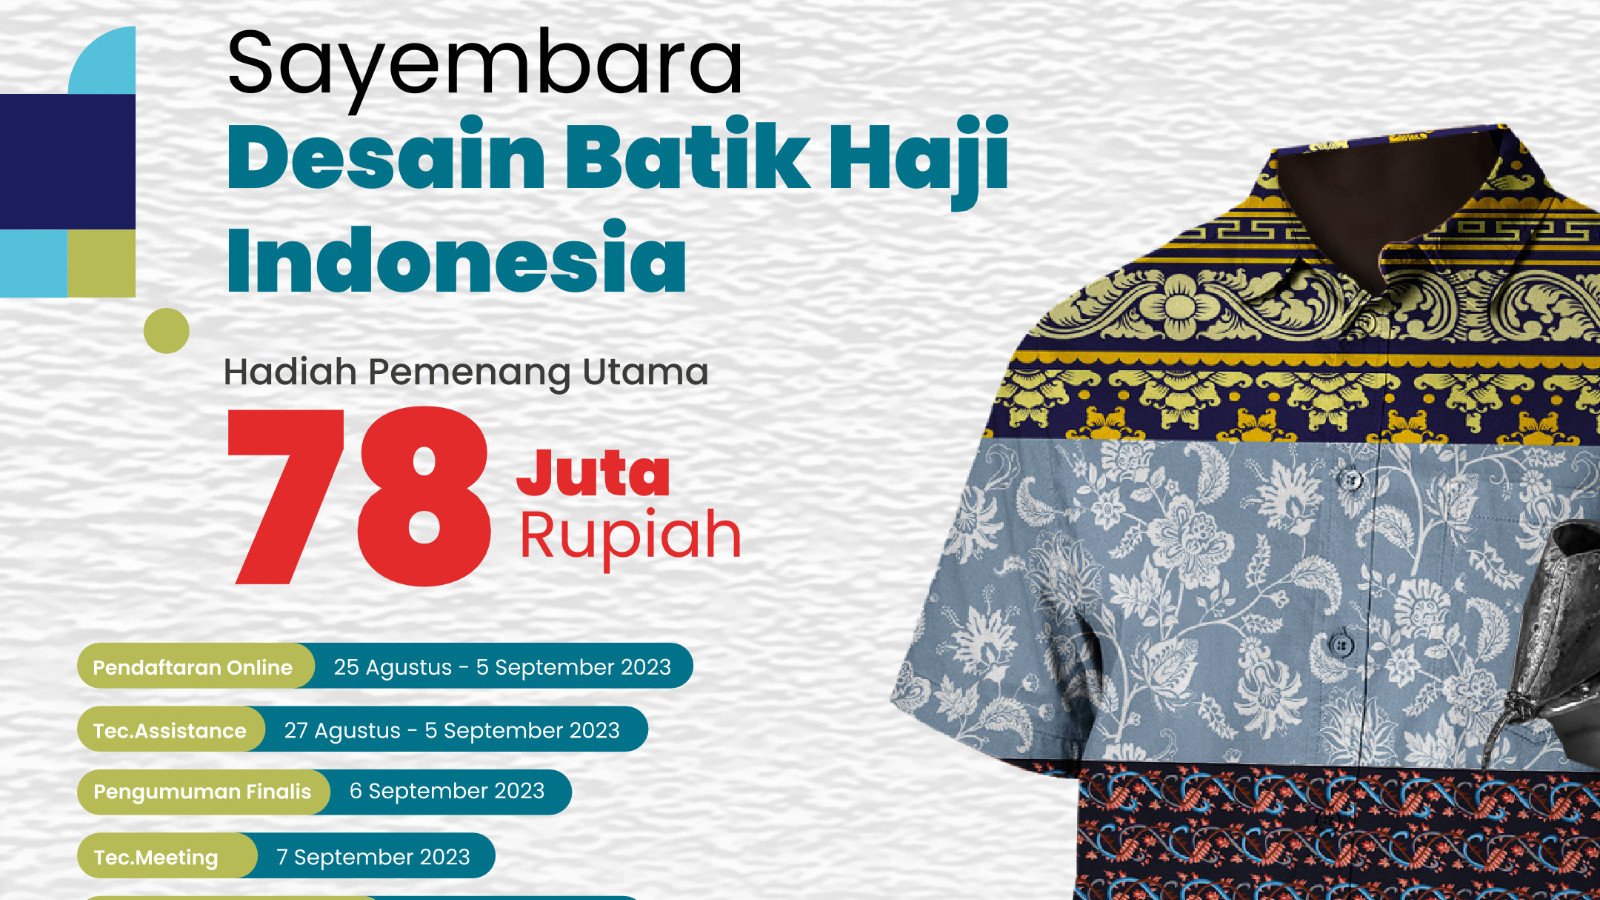 Sayembara Desain Batik Haji Indonesia